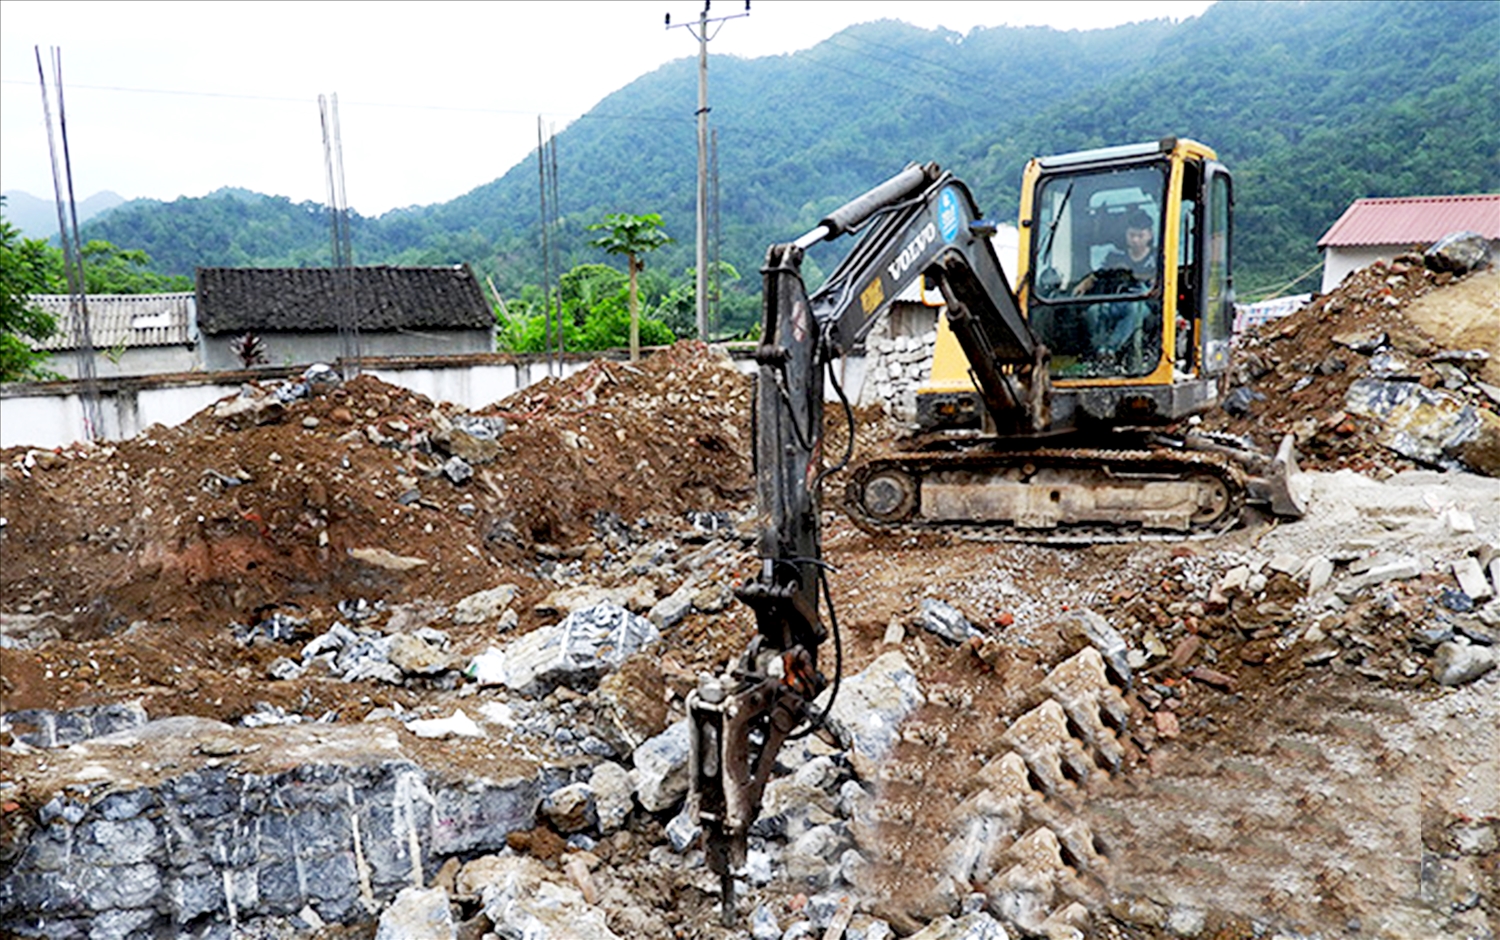 Thi công công trình y tế tuyến xã, hiện chỉ có duy nhất huyện Văn Lãng đạt tiến độ xây dựng , các huyện còn lại thi công đều chậm.